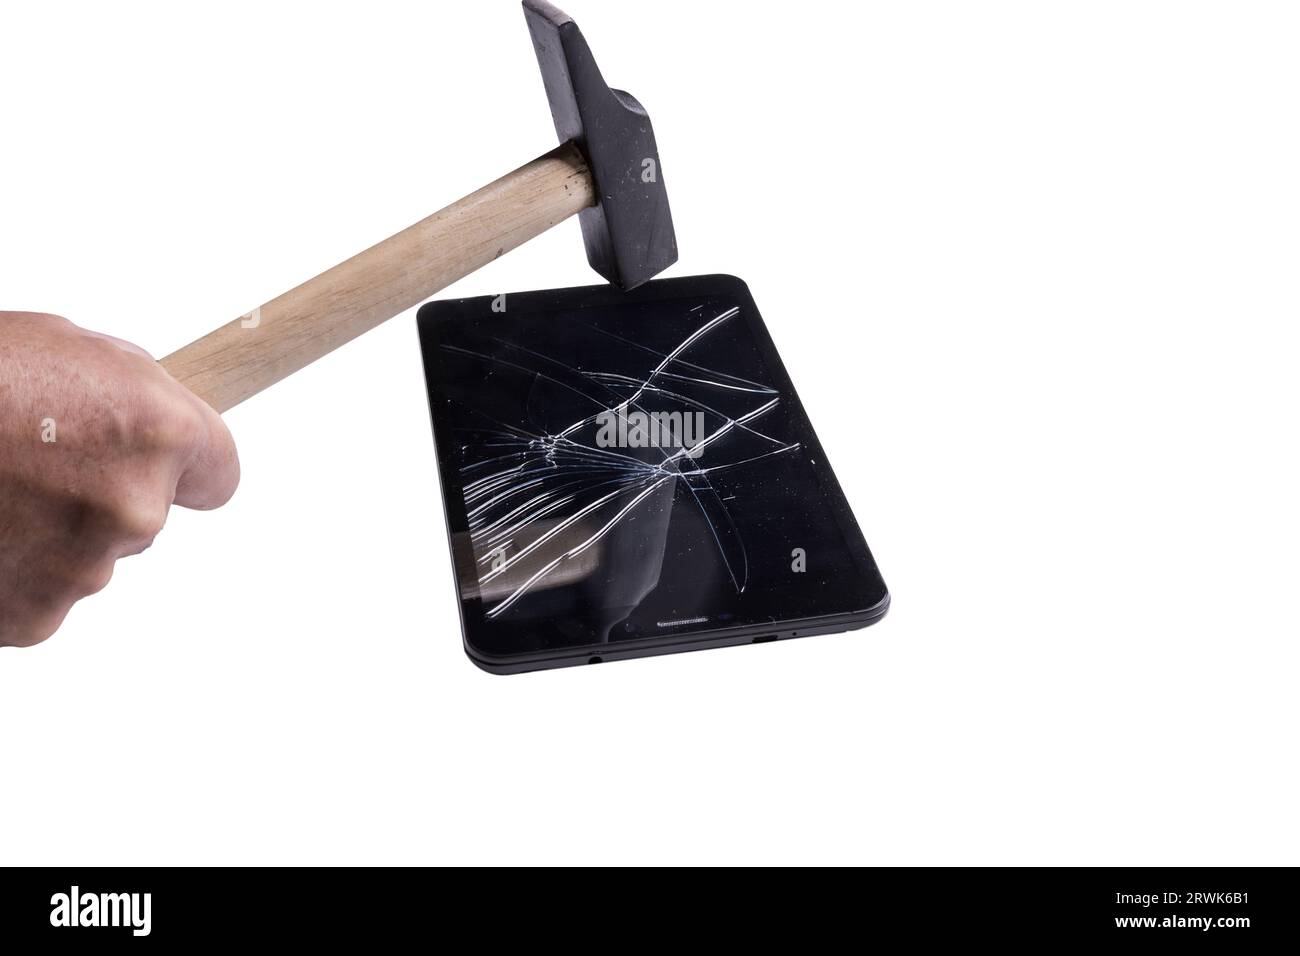 Ein kleines Tablet mit einem kaputten Bildschirm auf einer transparenten Oberfläche Stockfoto